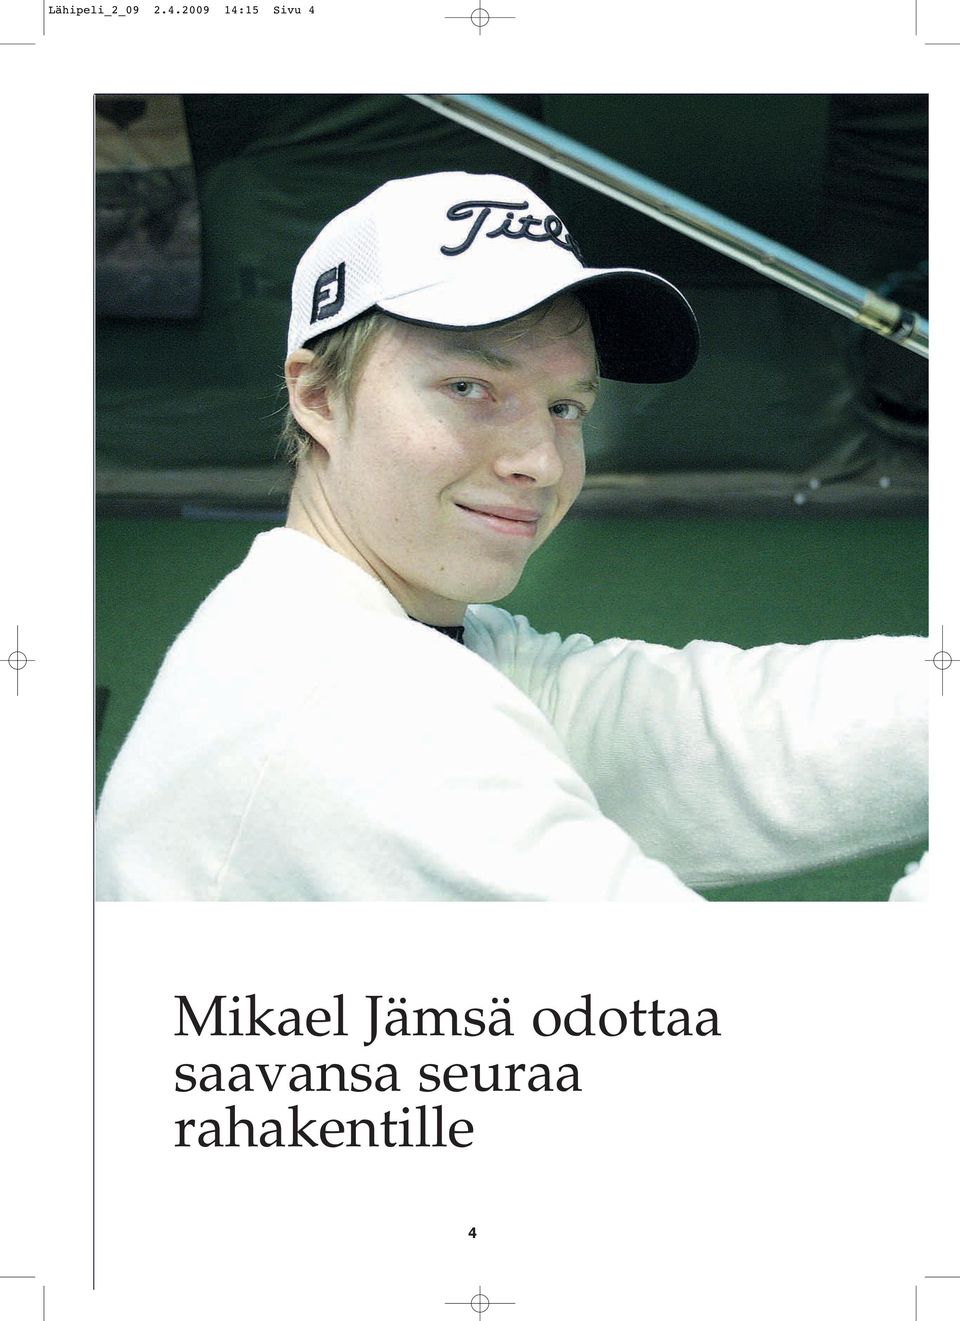 Mikael Jämsä odottaa